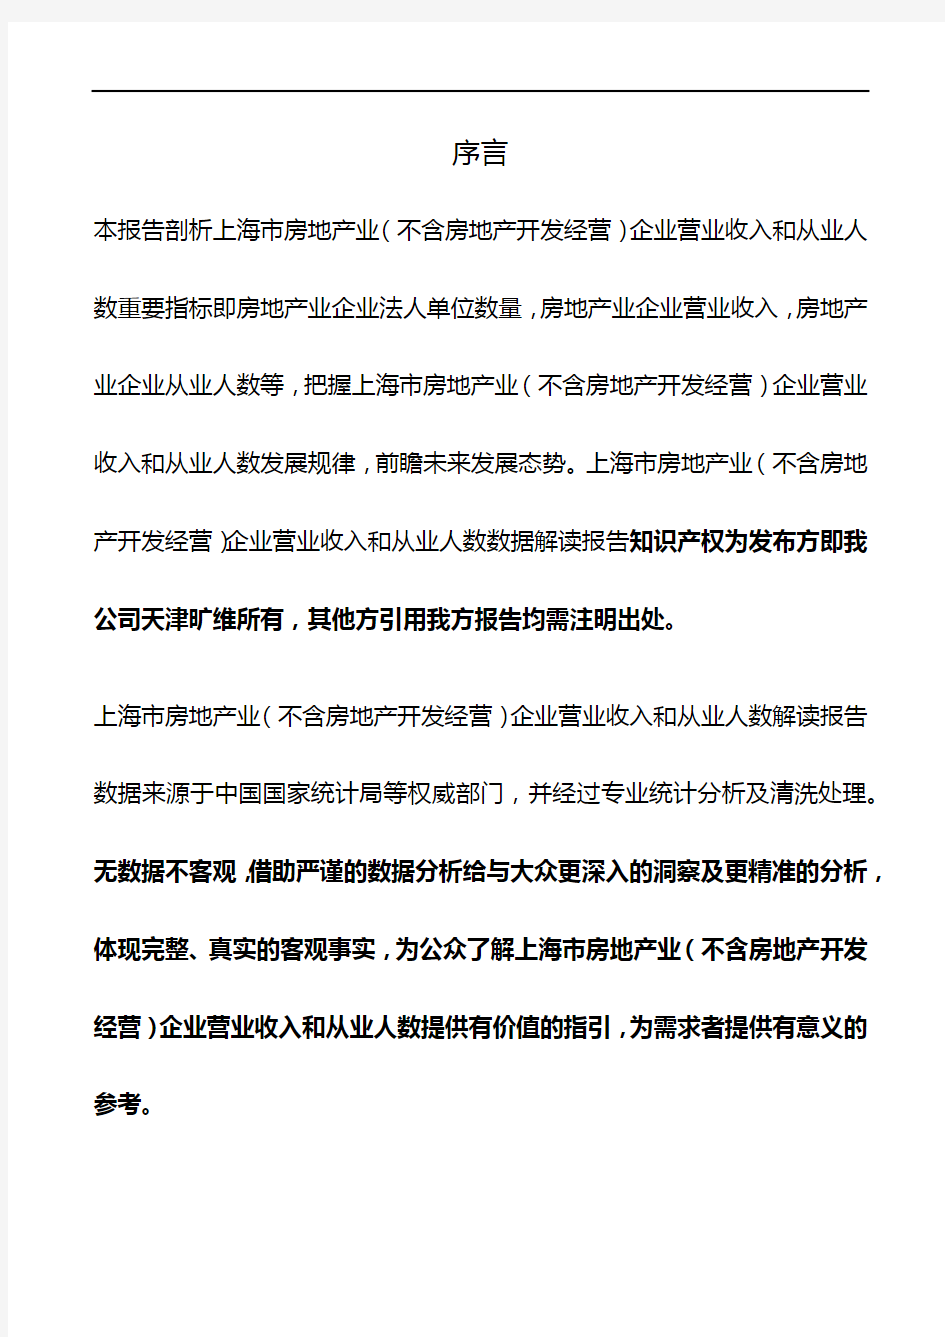 上海市房地产业(不含房地产开发经营)企业营业收入和从业人数3年数据解读报告2019版